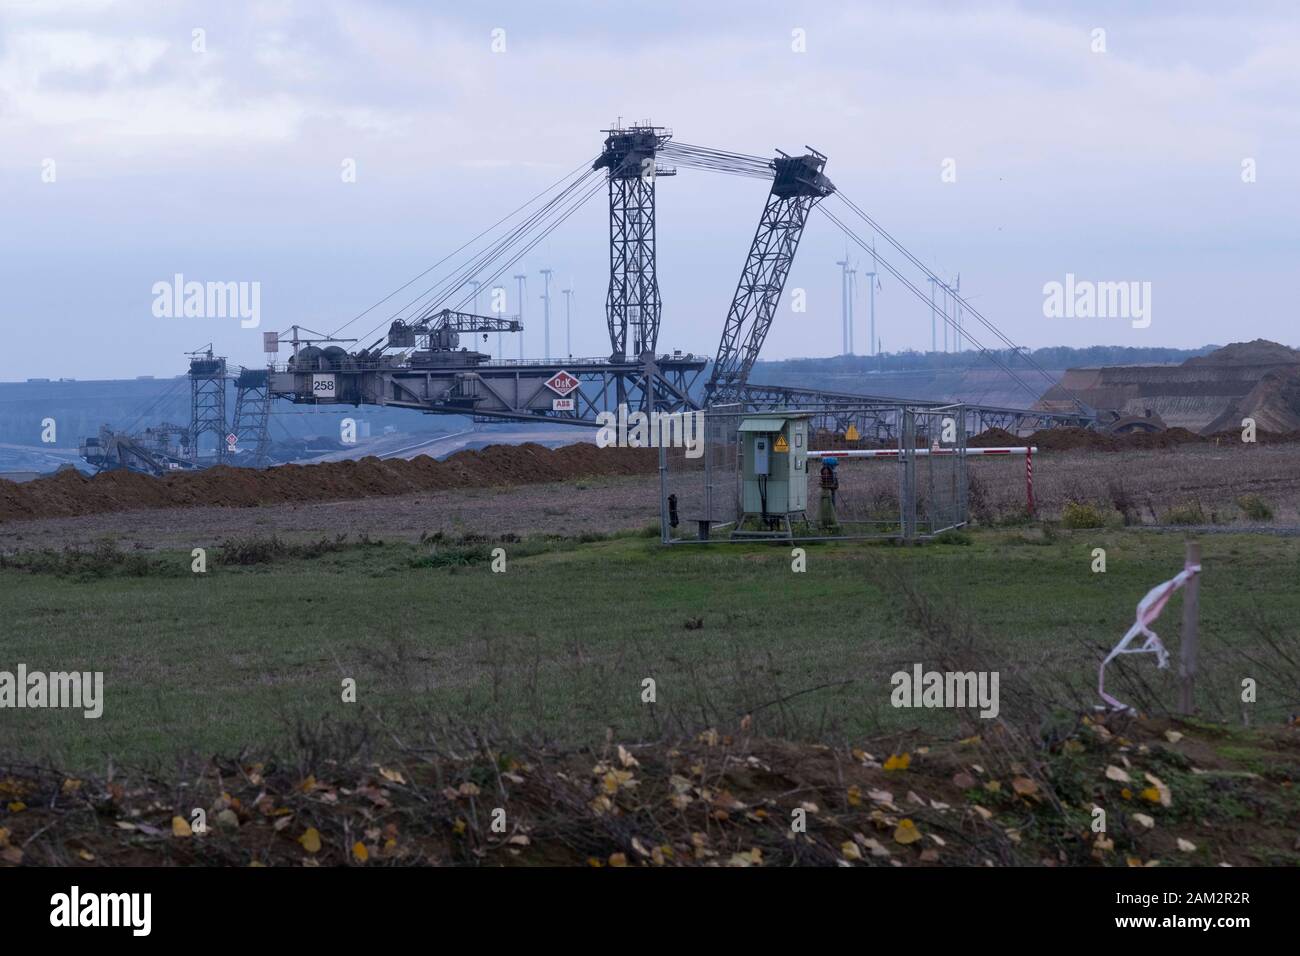 View of top of bucket wheel excavator in coal mine, Garzweiller, Germany Stock Photo